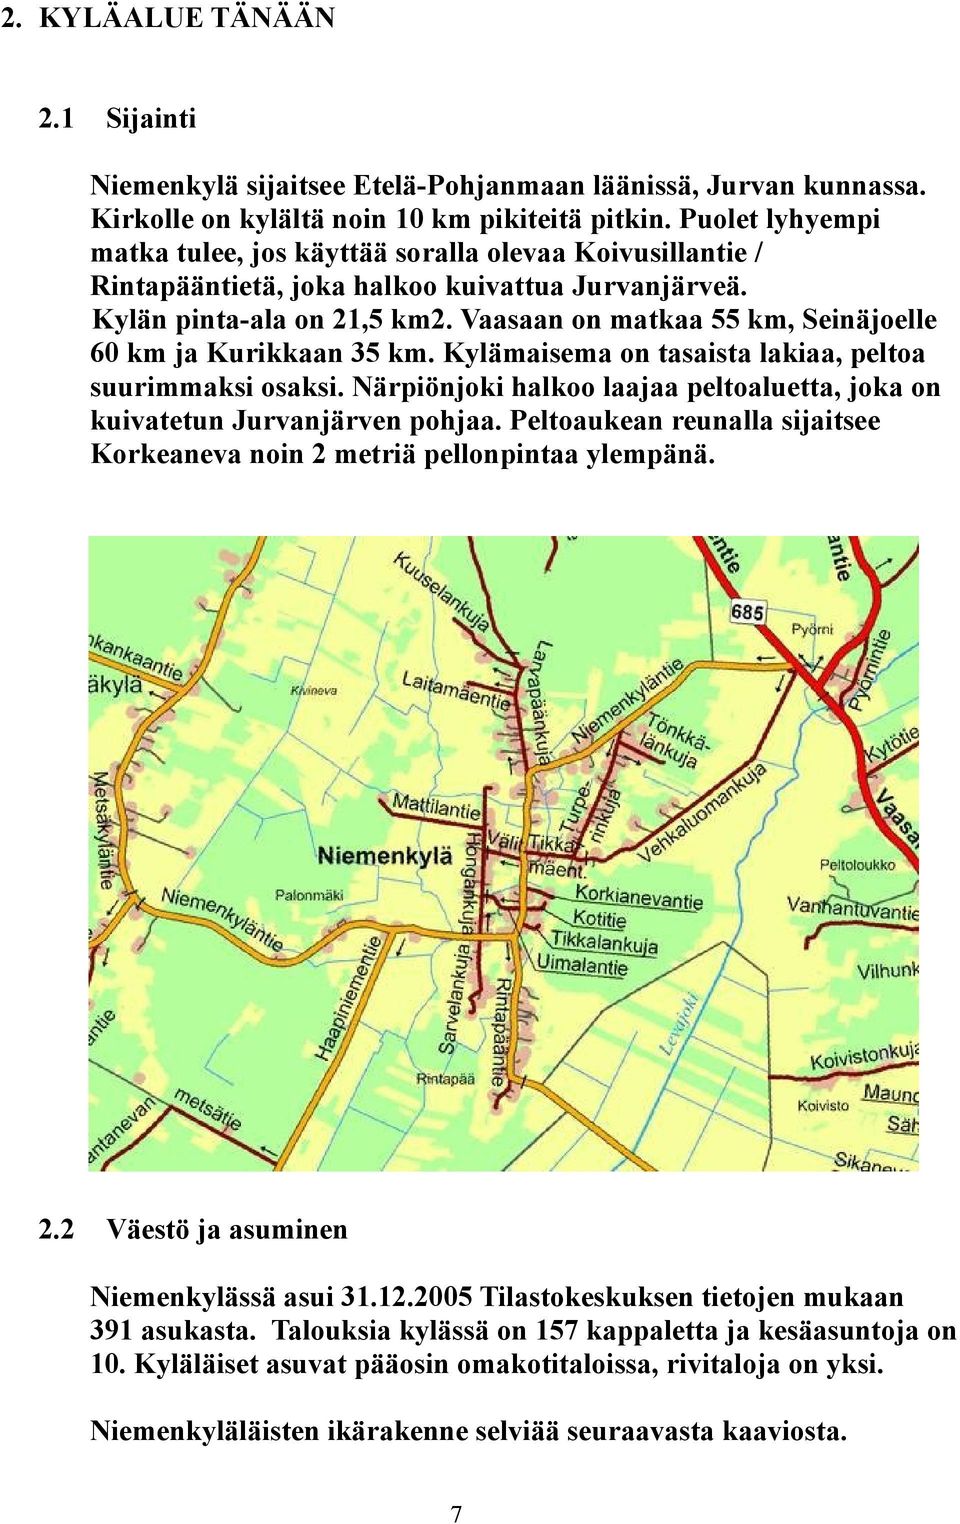 Vaasaan on matkaa 55 km, Seinäjoelle 60 km ja Kurikkaan 35 km. Kylämaisema on tasaista lakiaa, peltoa suurimmaksi osaksi.